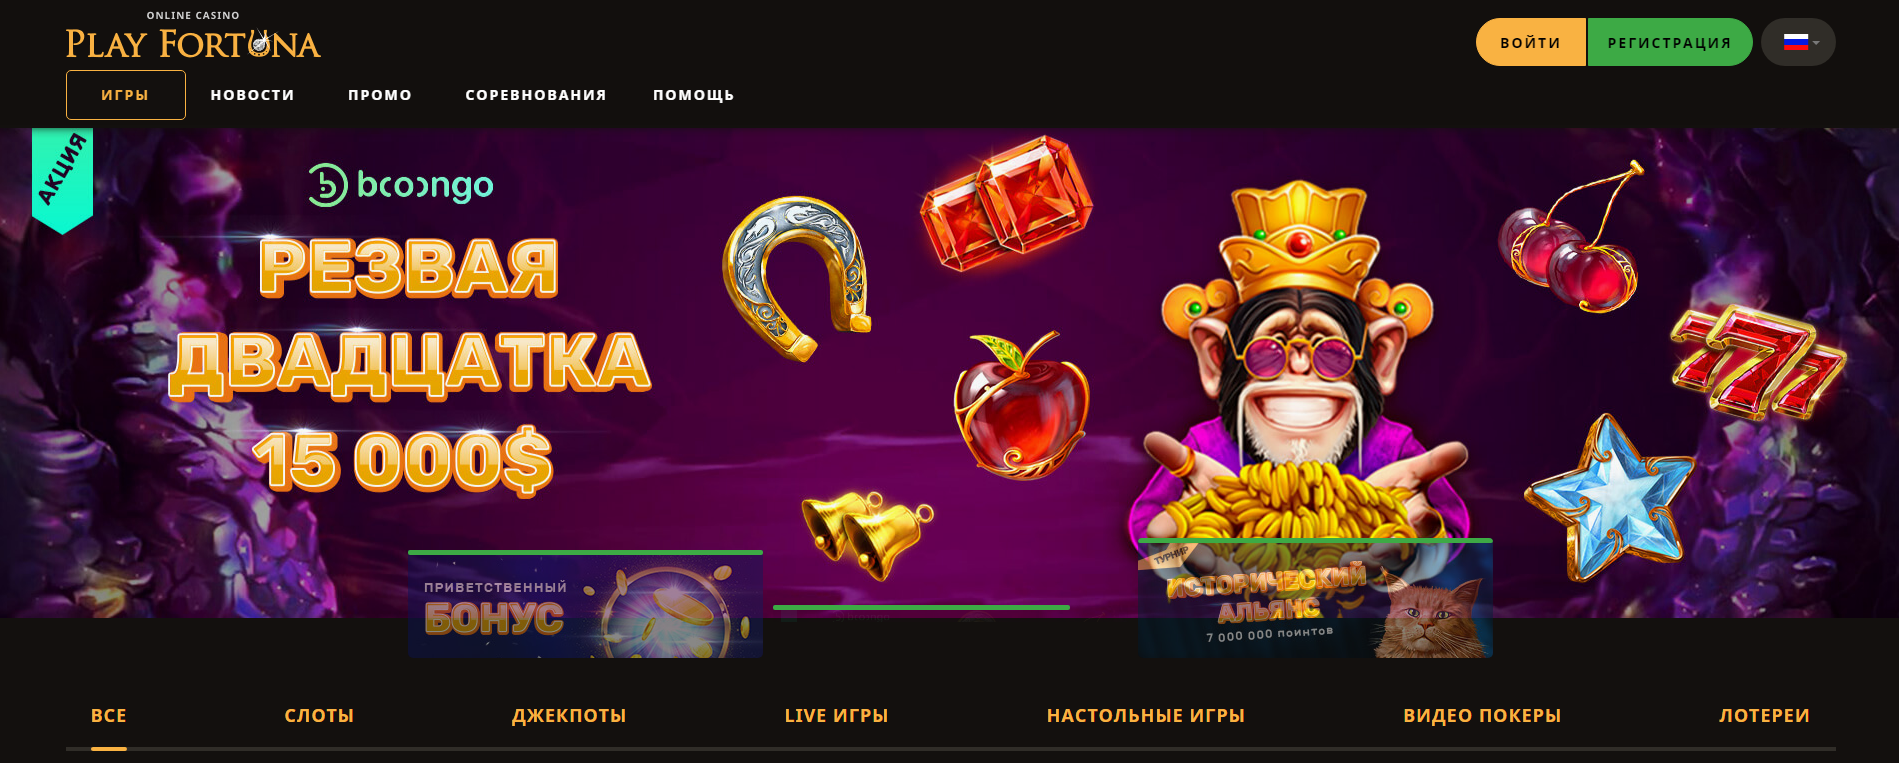 Администрация казино Play Fortuna обновила дизайн сайта – что изменилось?